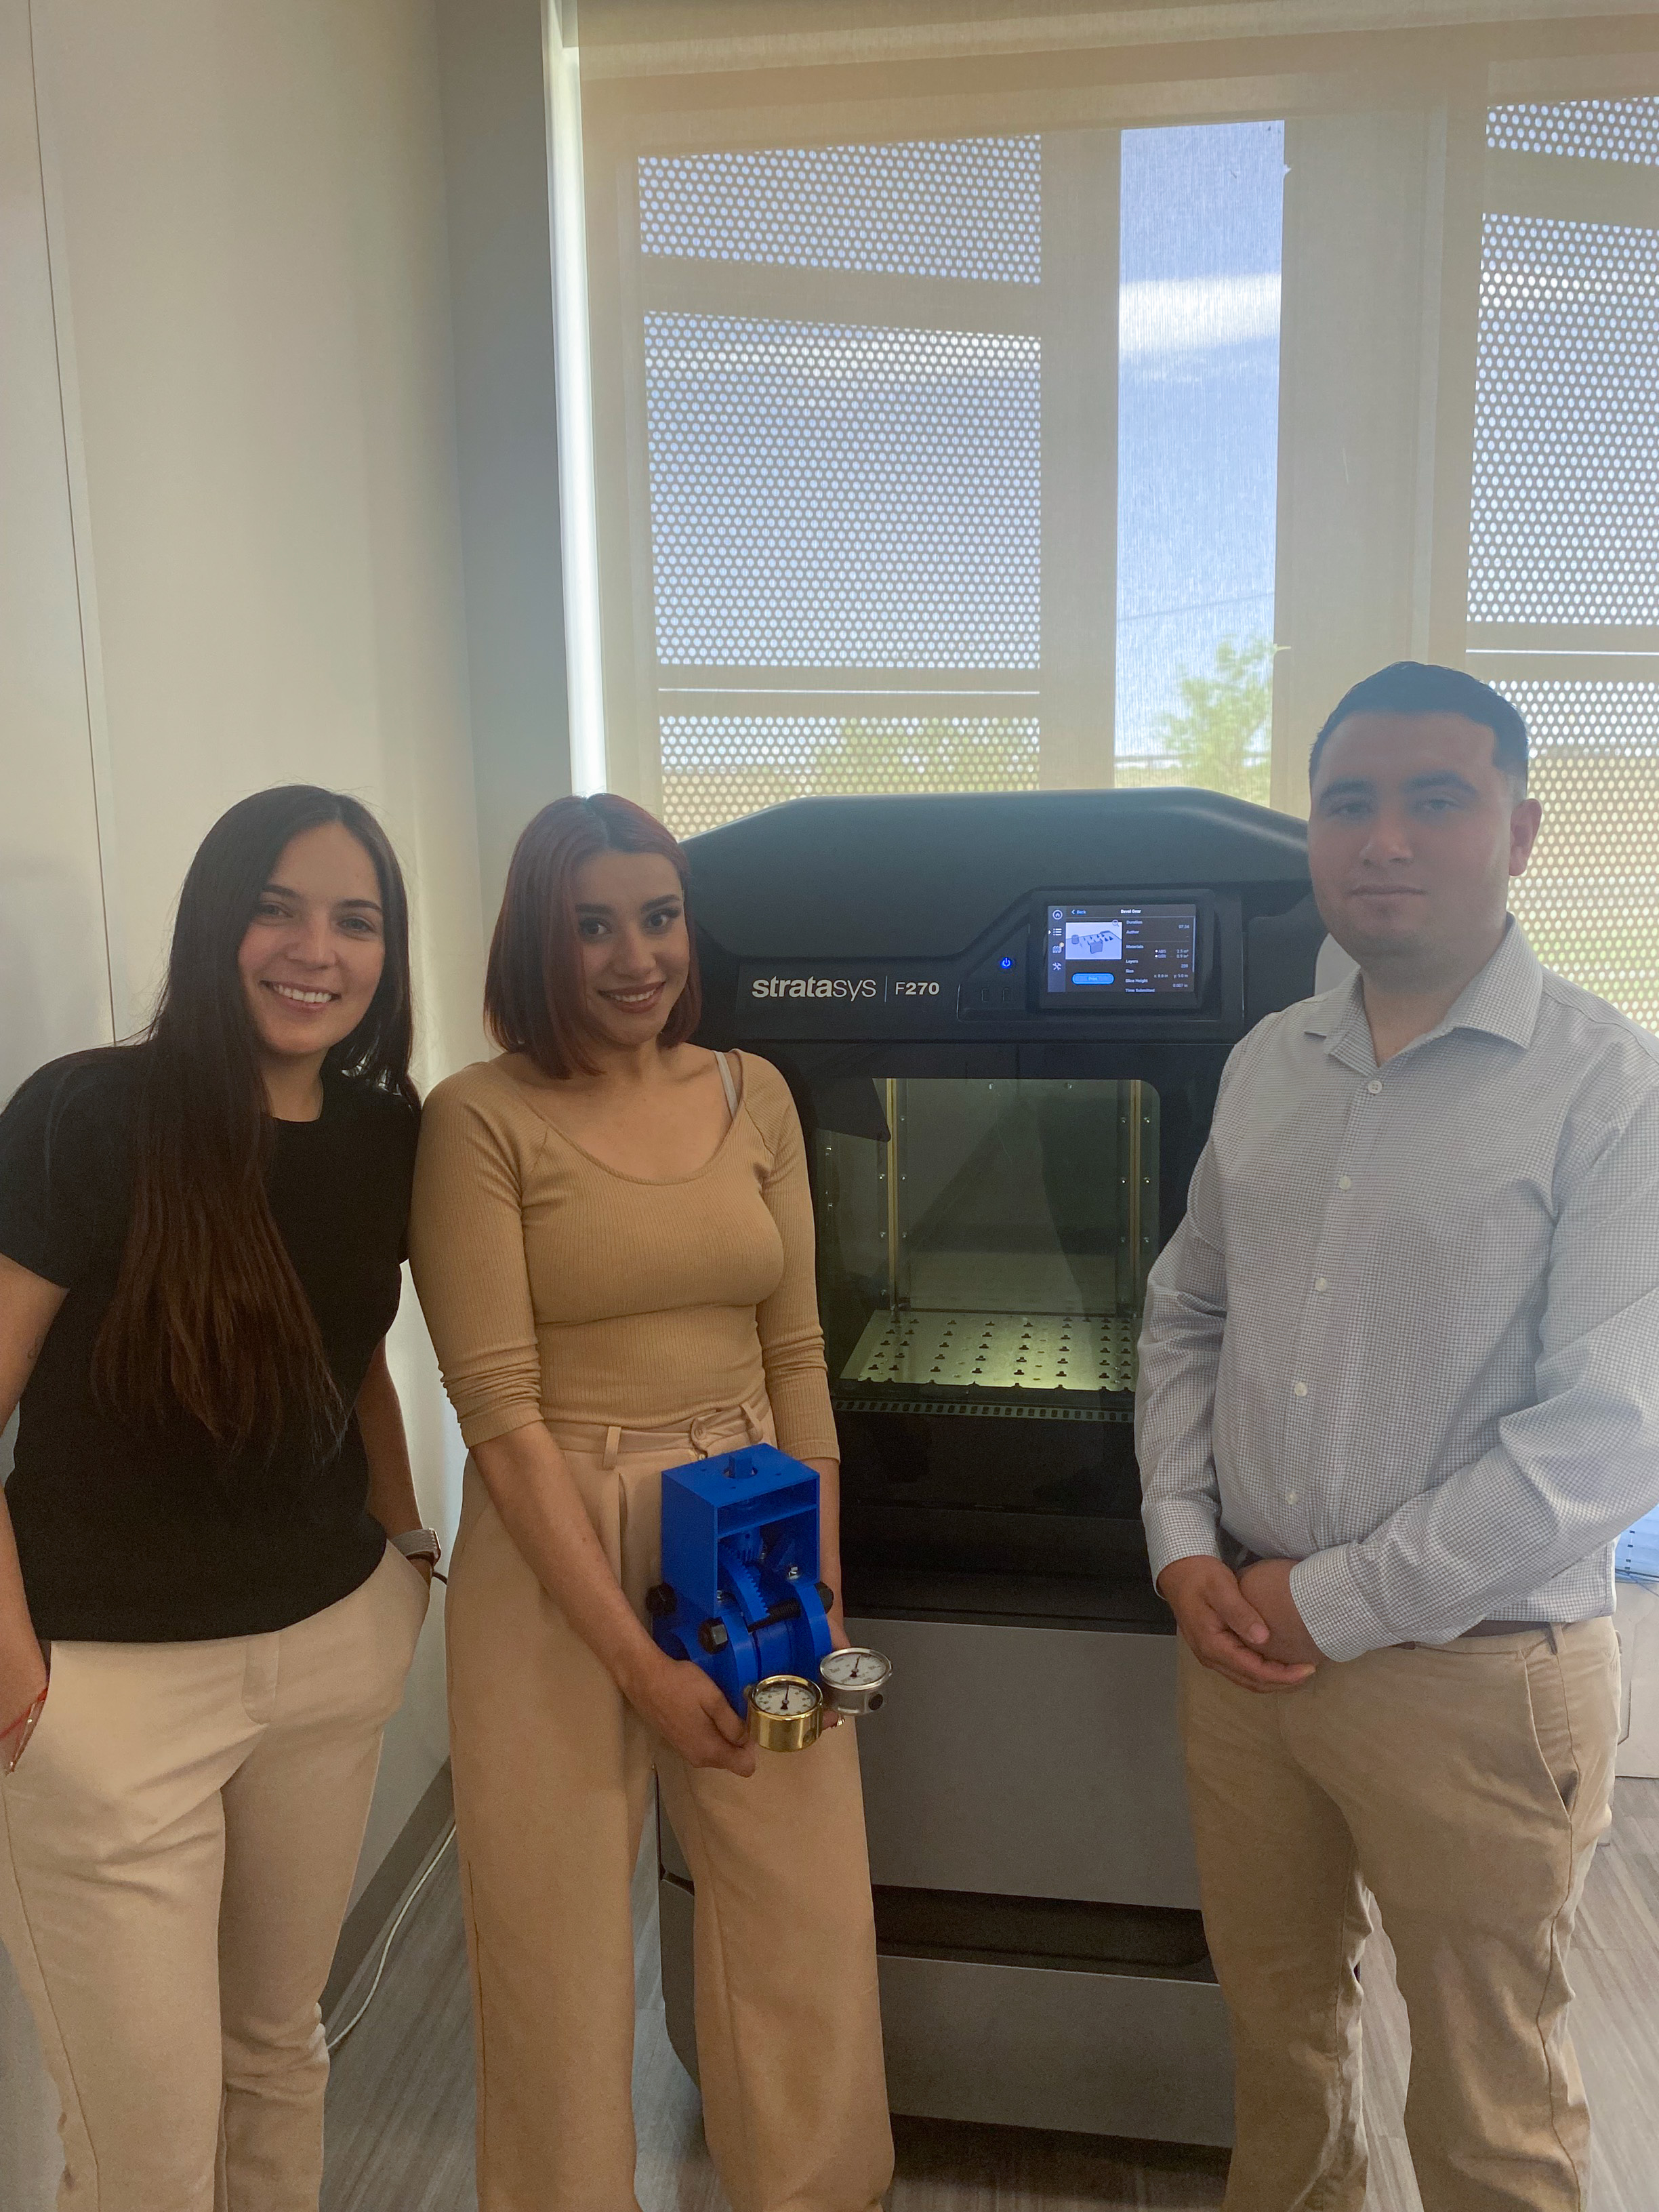 Estudiantes de ingeniería mecánica Marian, Maribel y Esteban con impresora 3D